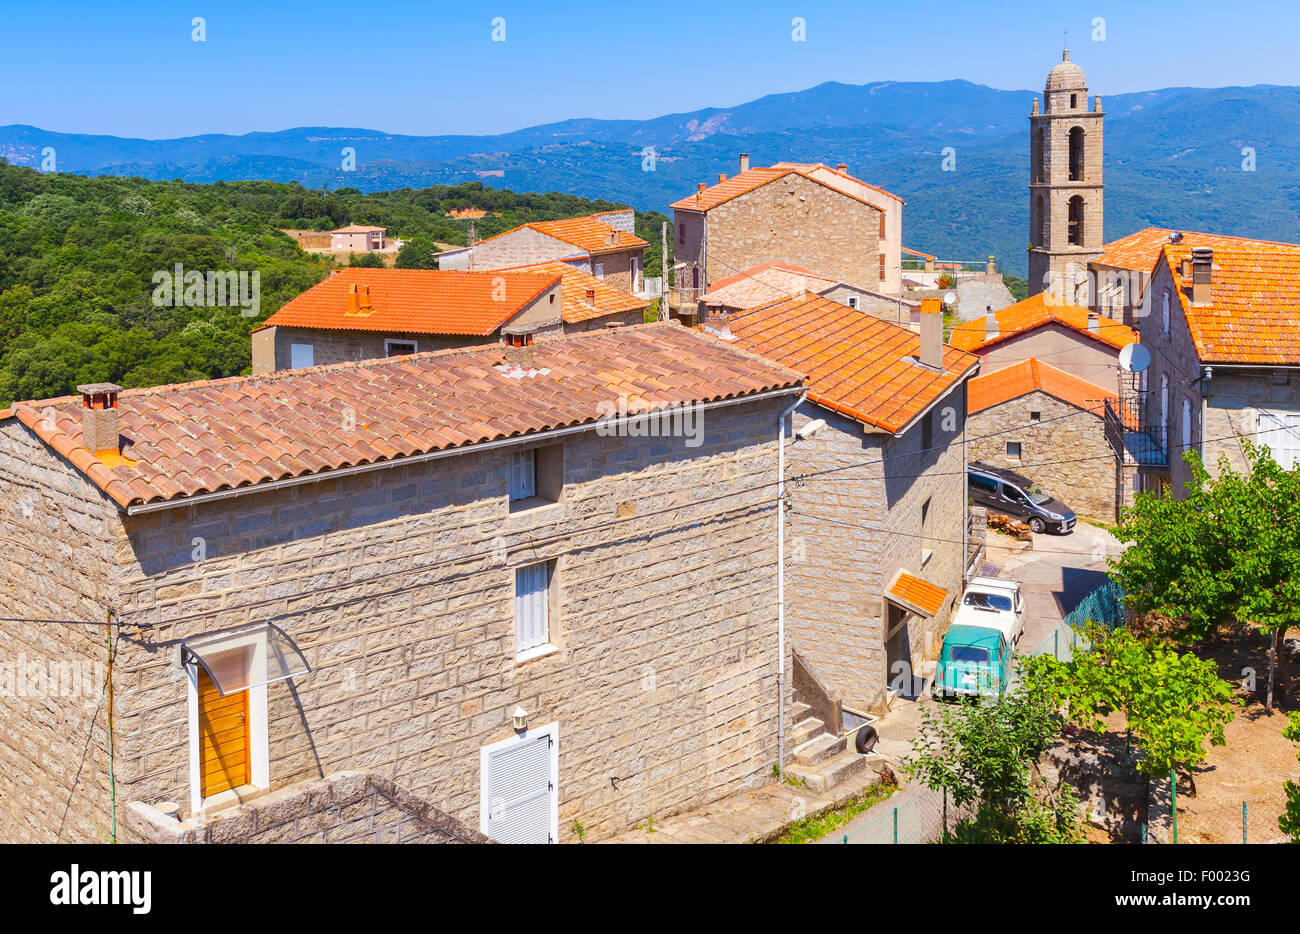 Paysage village corse, résidence maisons et église. Sollacaro, Corse, France Banque D'Images